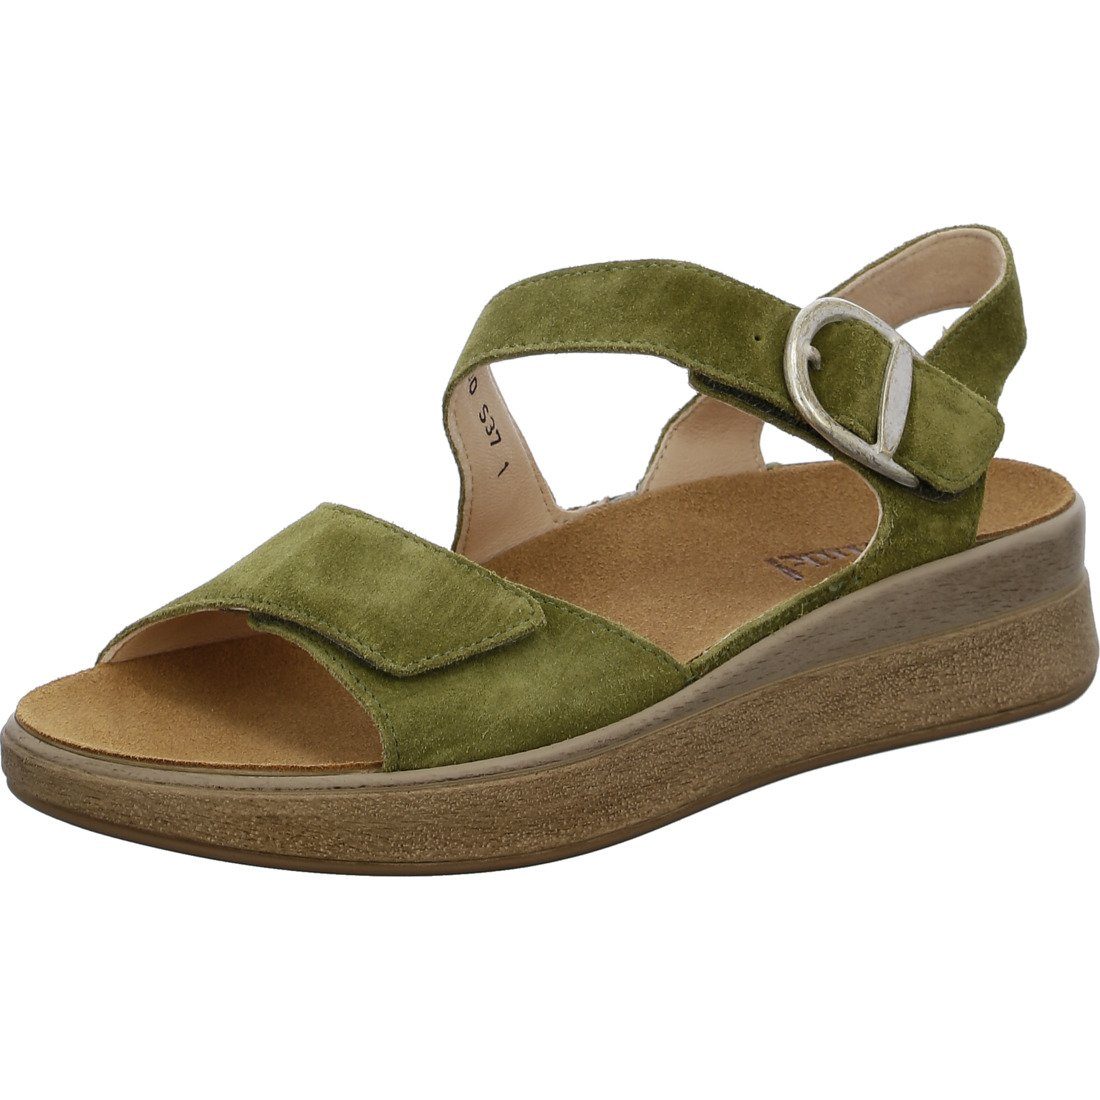 Sandalette Sandalette Think! - Schuhe, Think! Velours grün Meggie 046096